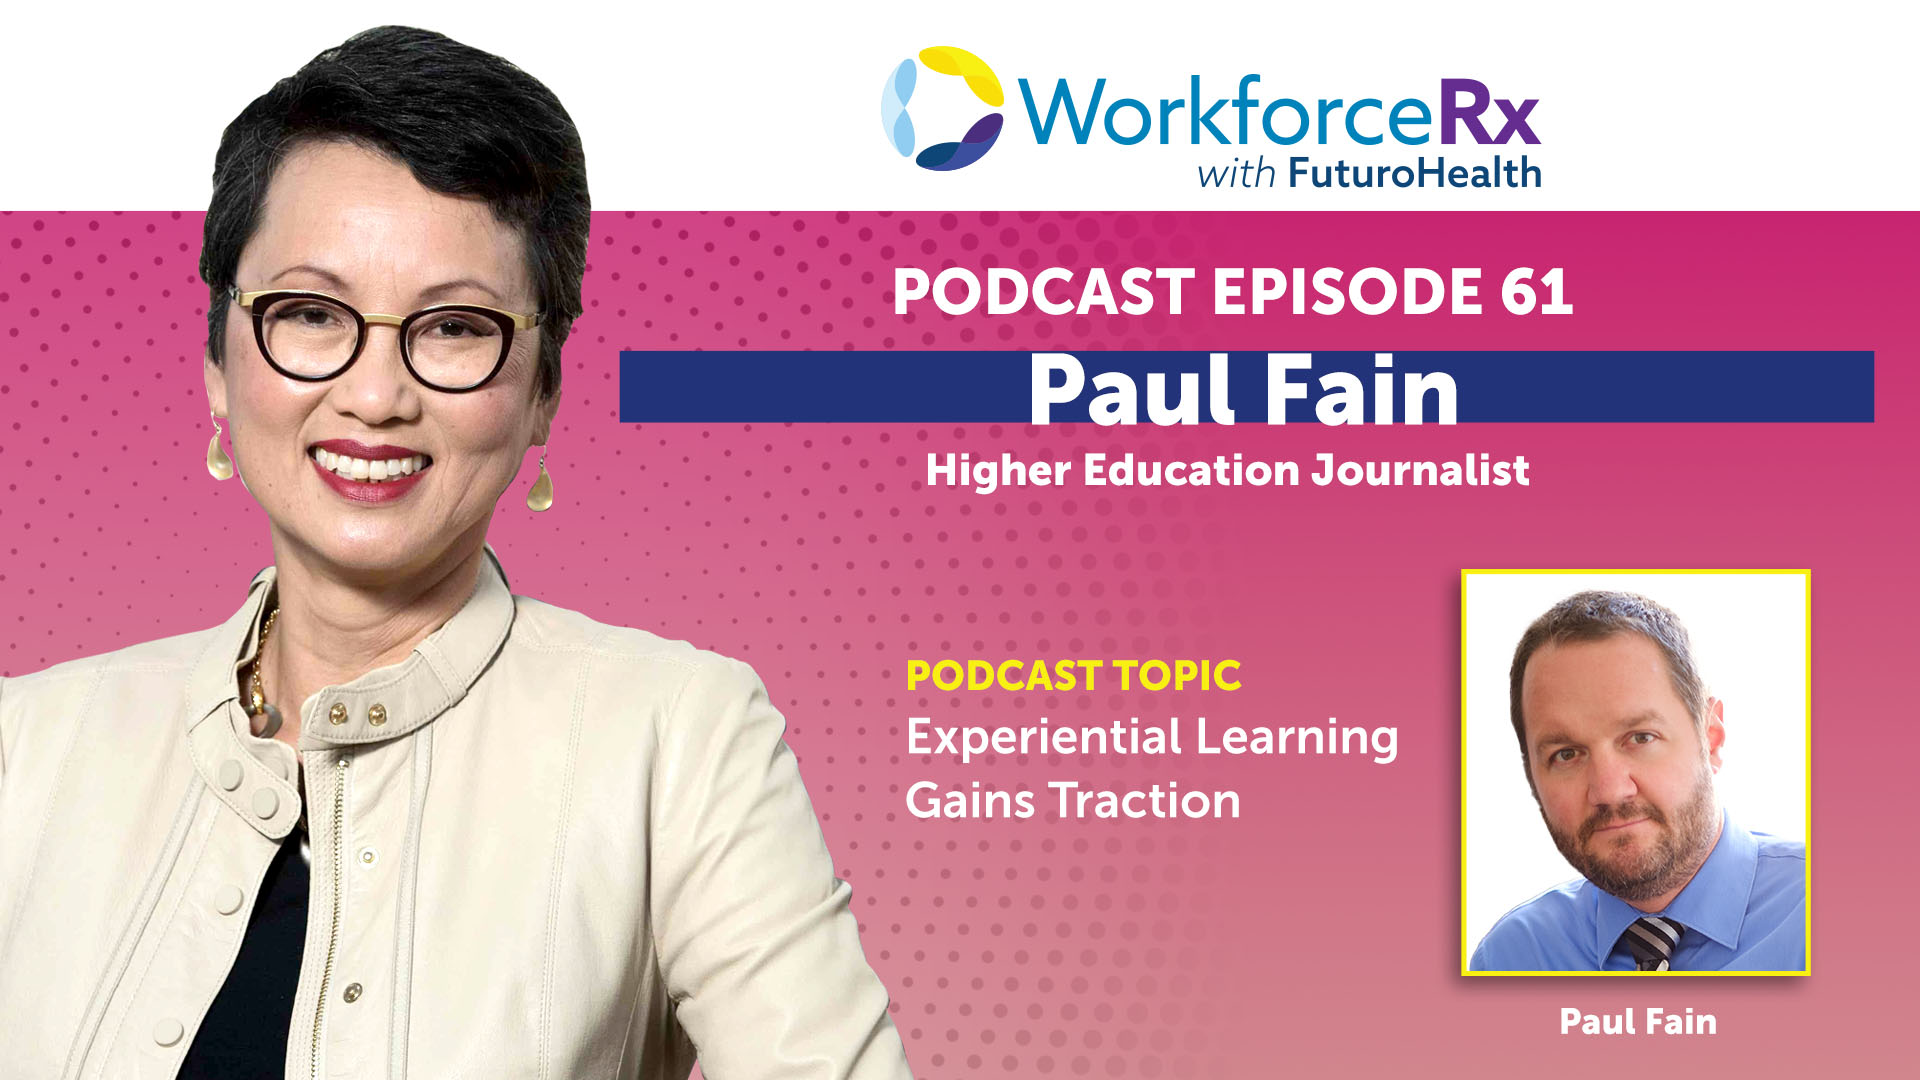 EP61 WorkforceRx Podcast Paul Fain